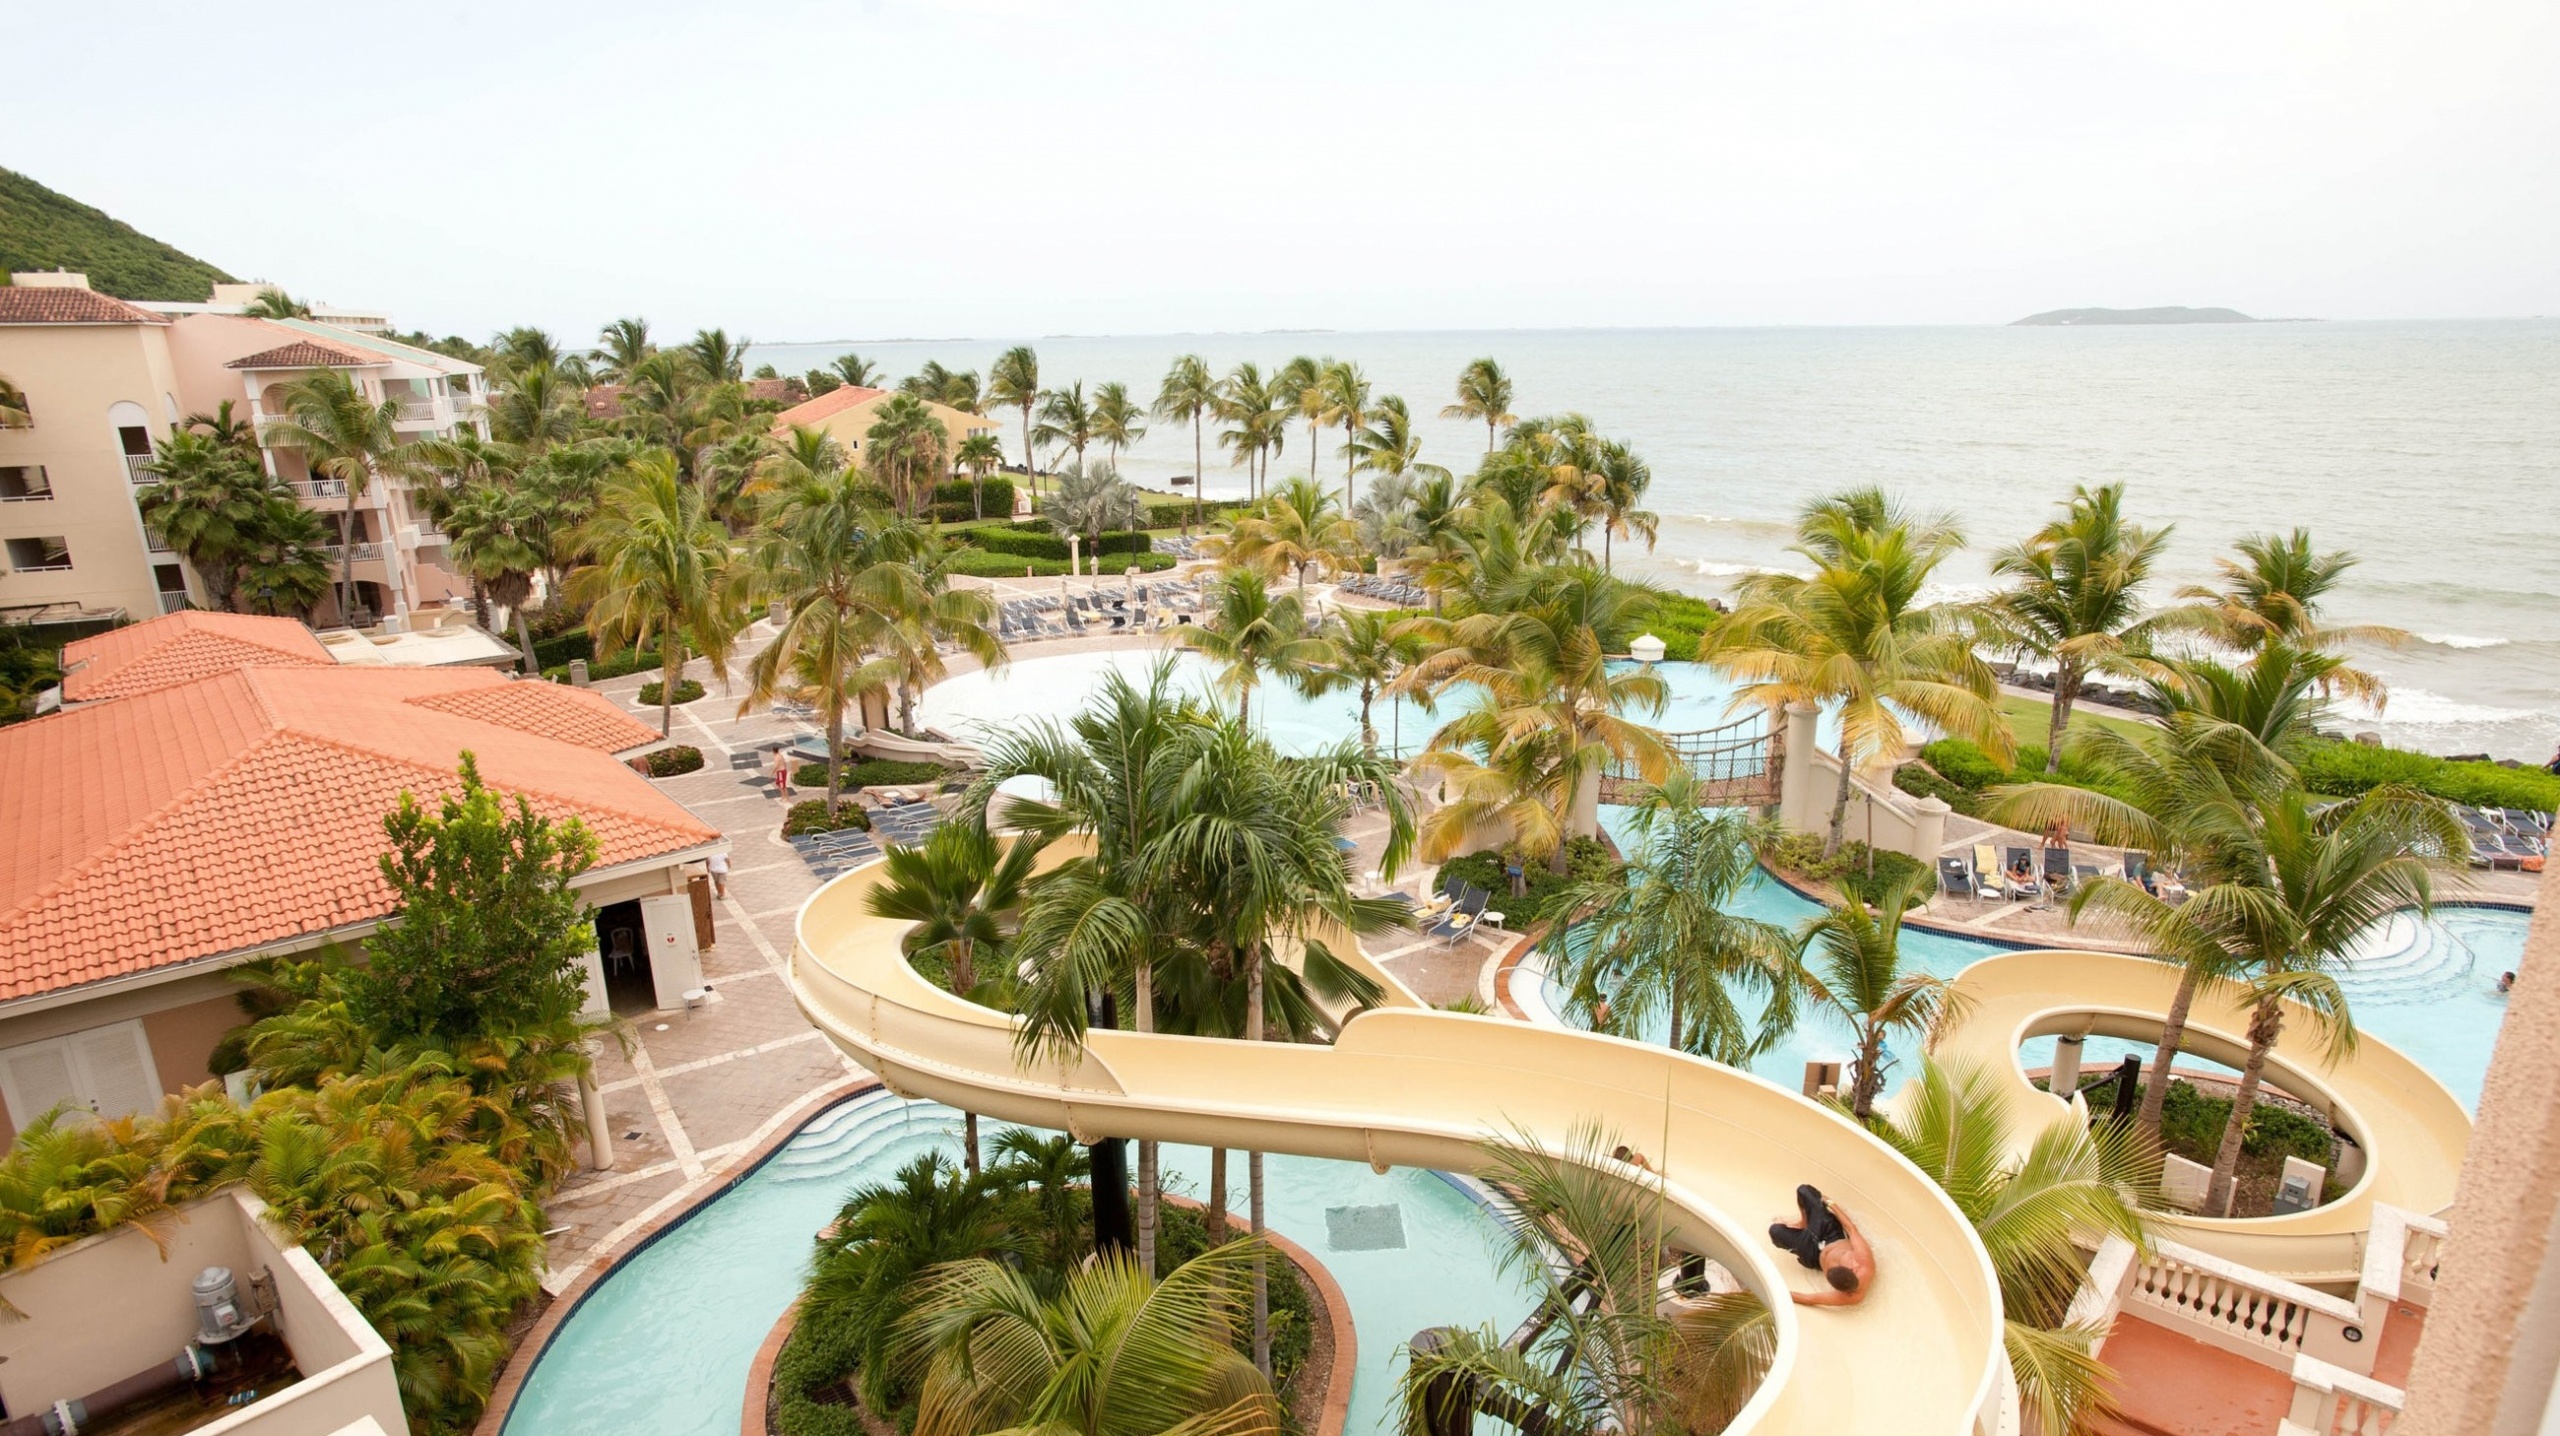 Pool Sider, El Conquistador Resort, Puerto Rico